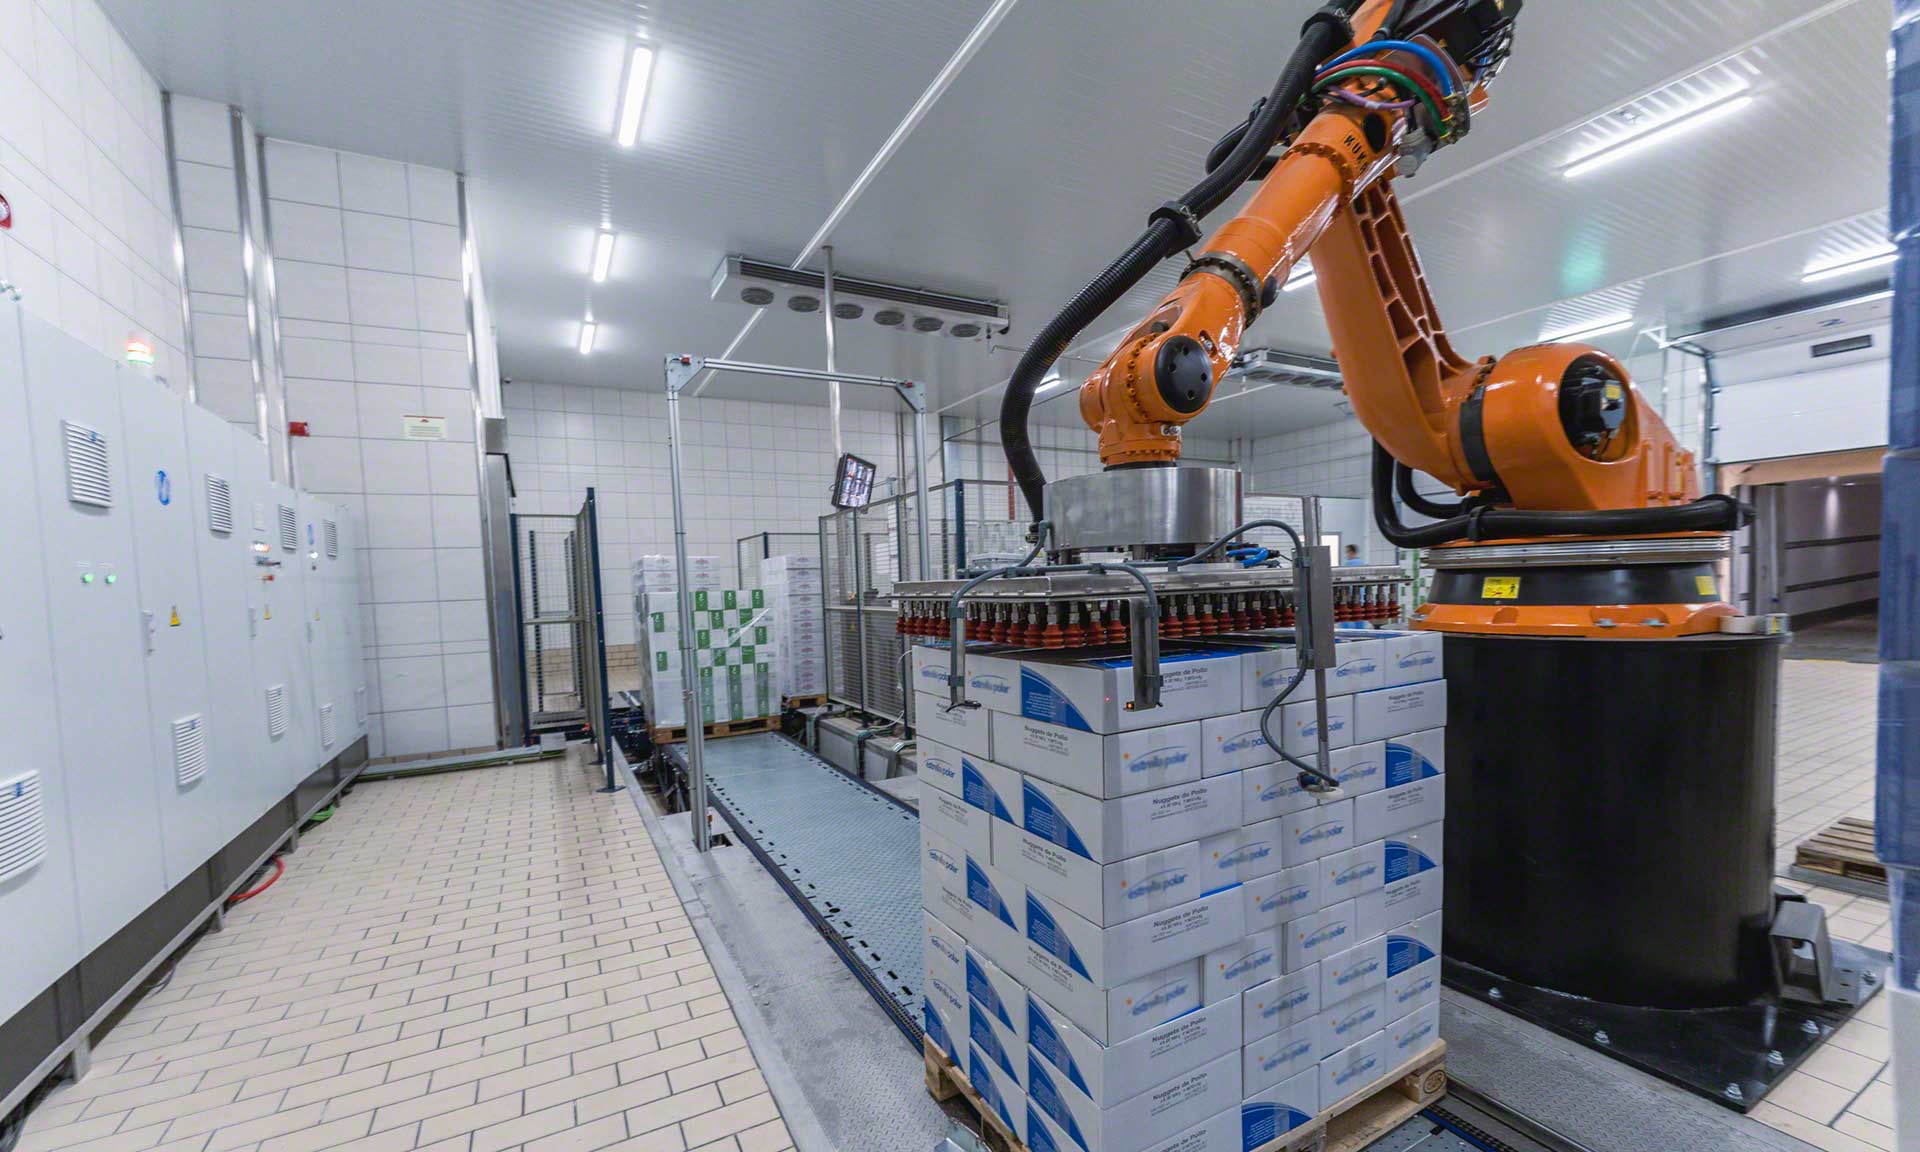 Robots de depósito: tecnología que automatiza la logística